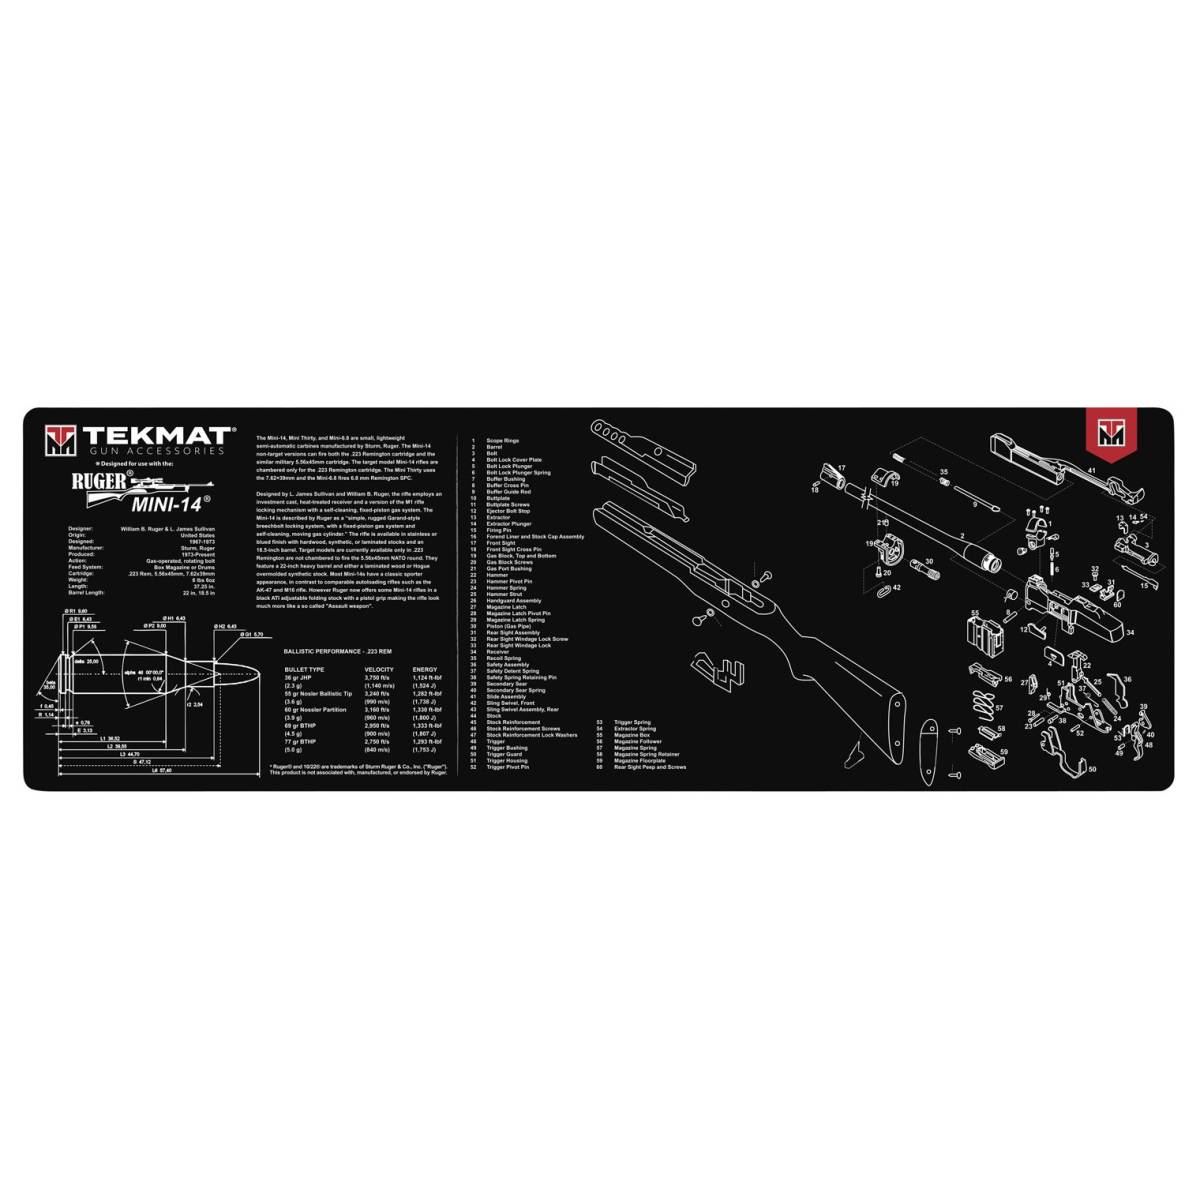 TekMat TEKR36MINI14 Ruger Mini-14 Cleaning Mat Black/White Rubber 36”...-img-0